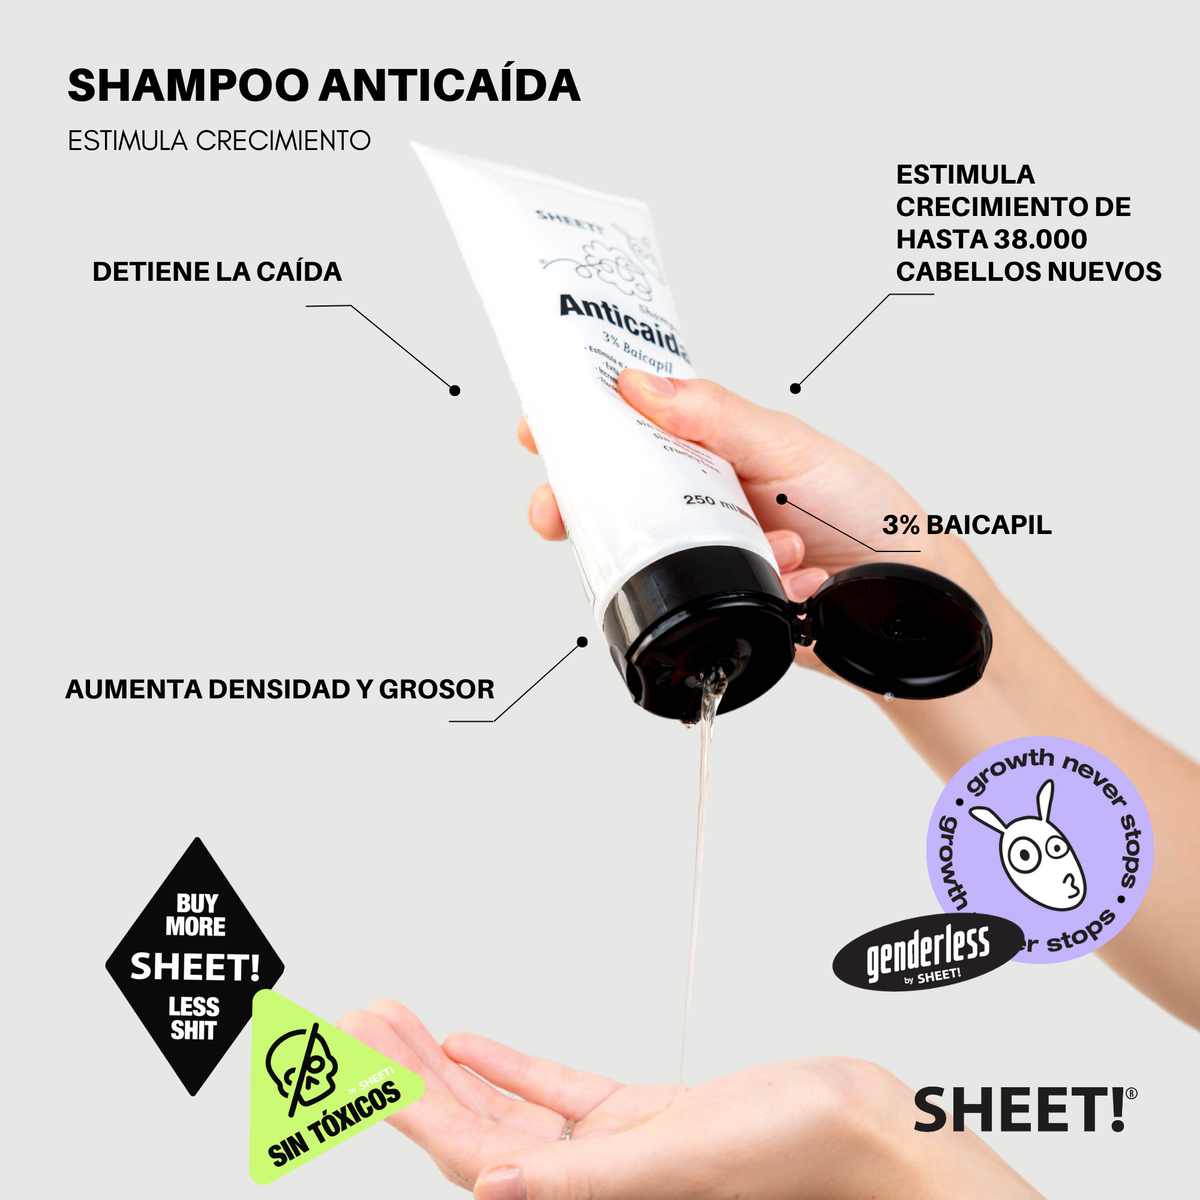 Shampoo Anticaída